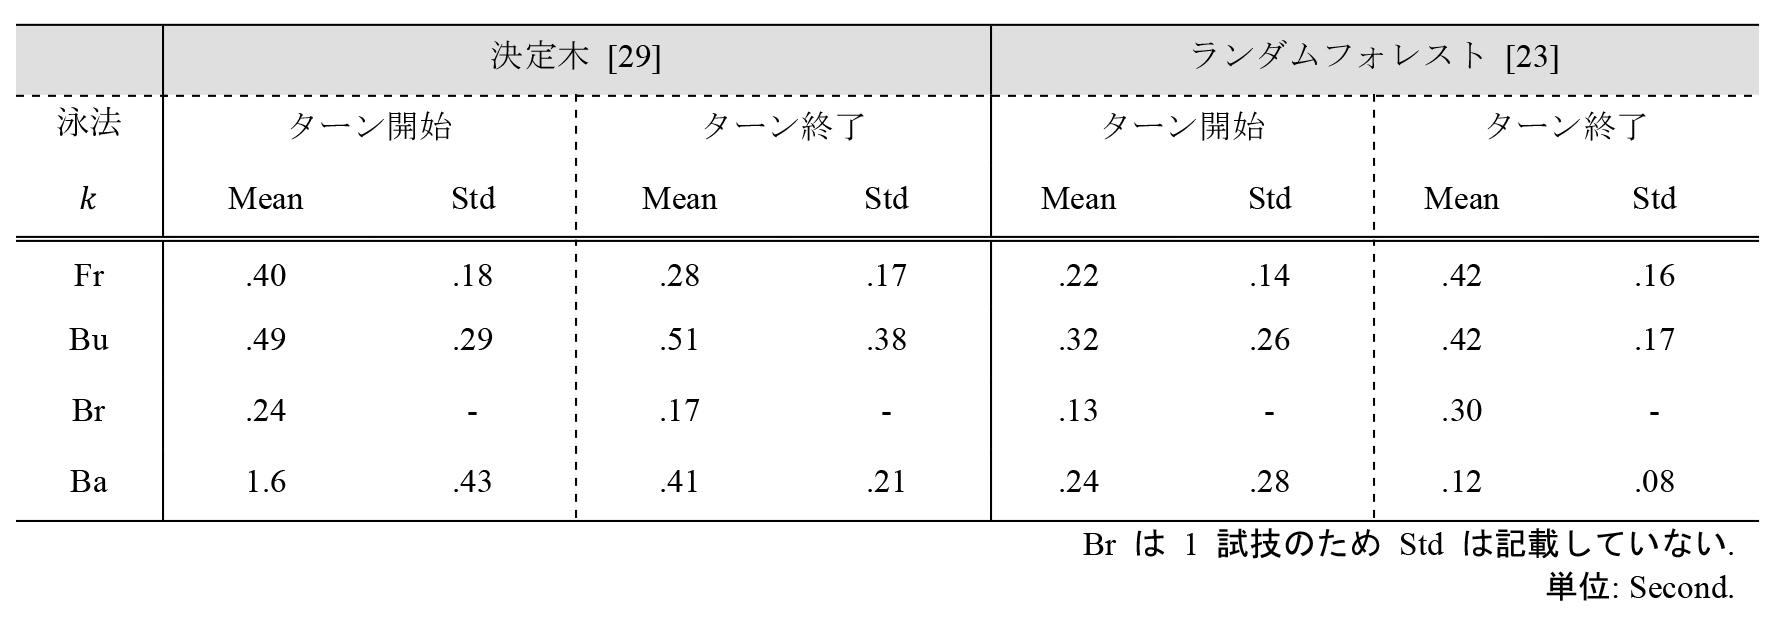 ターン区間推定の誤差（論文[23]の表2，論文[29]の表4のデータをもとに作成）